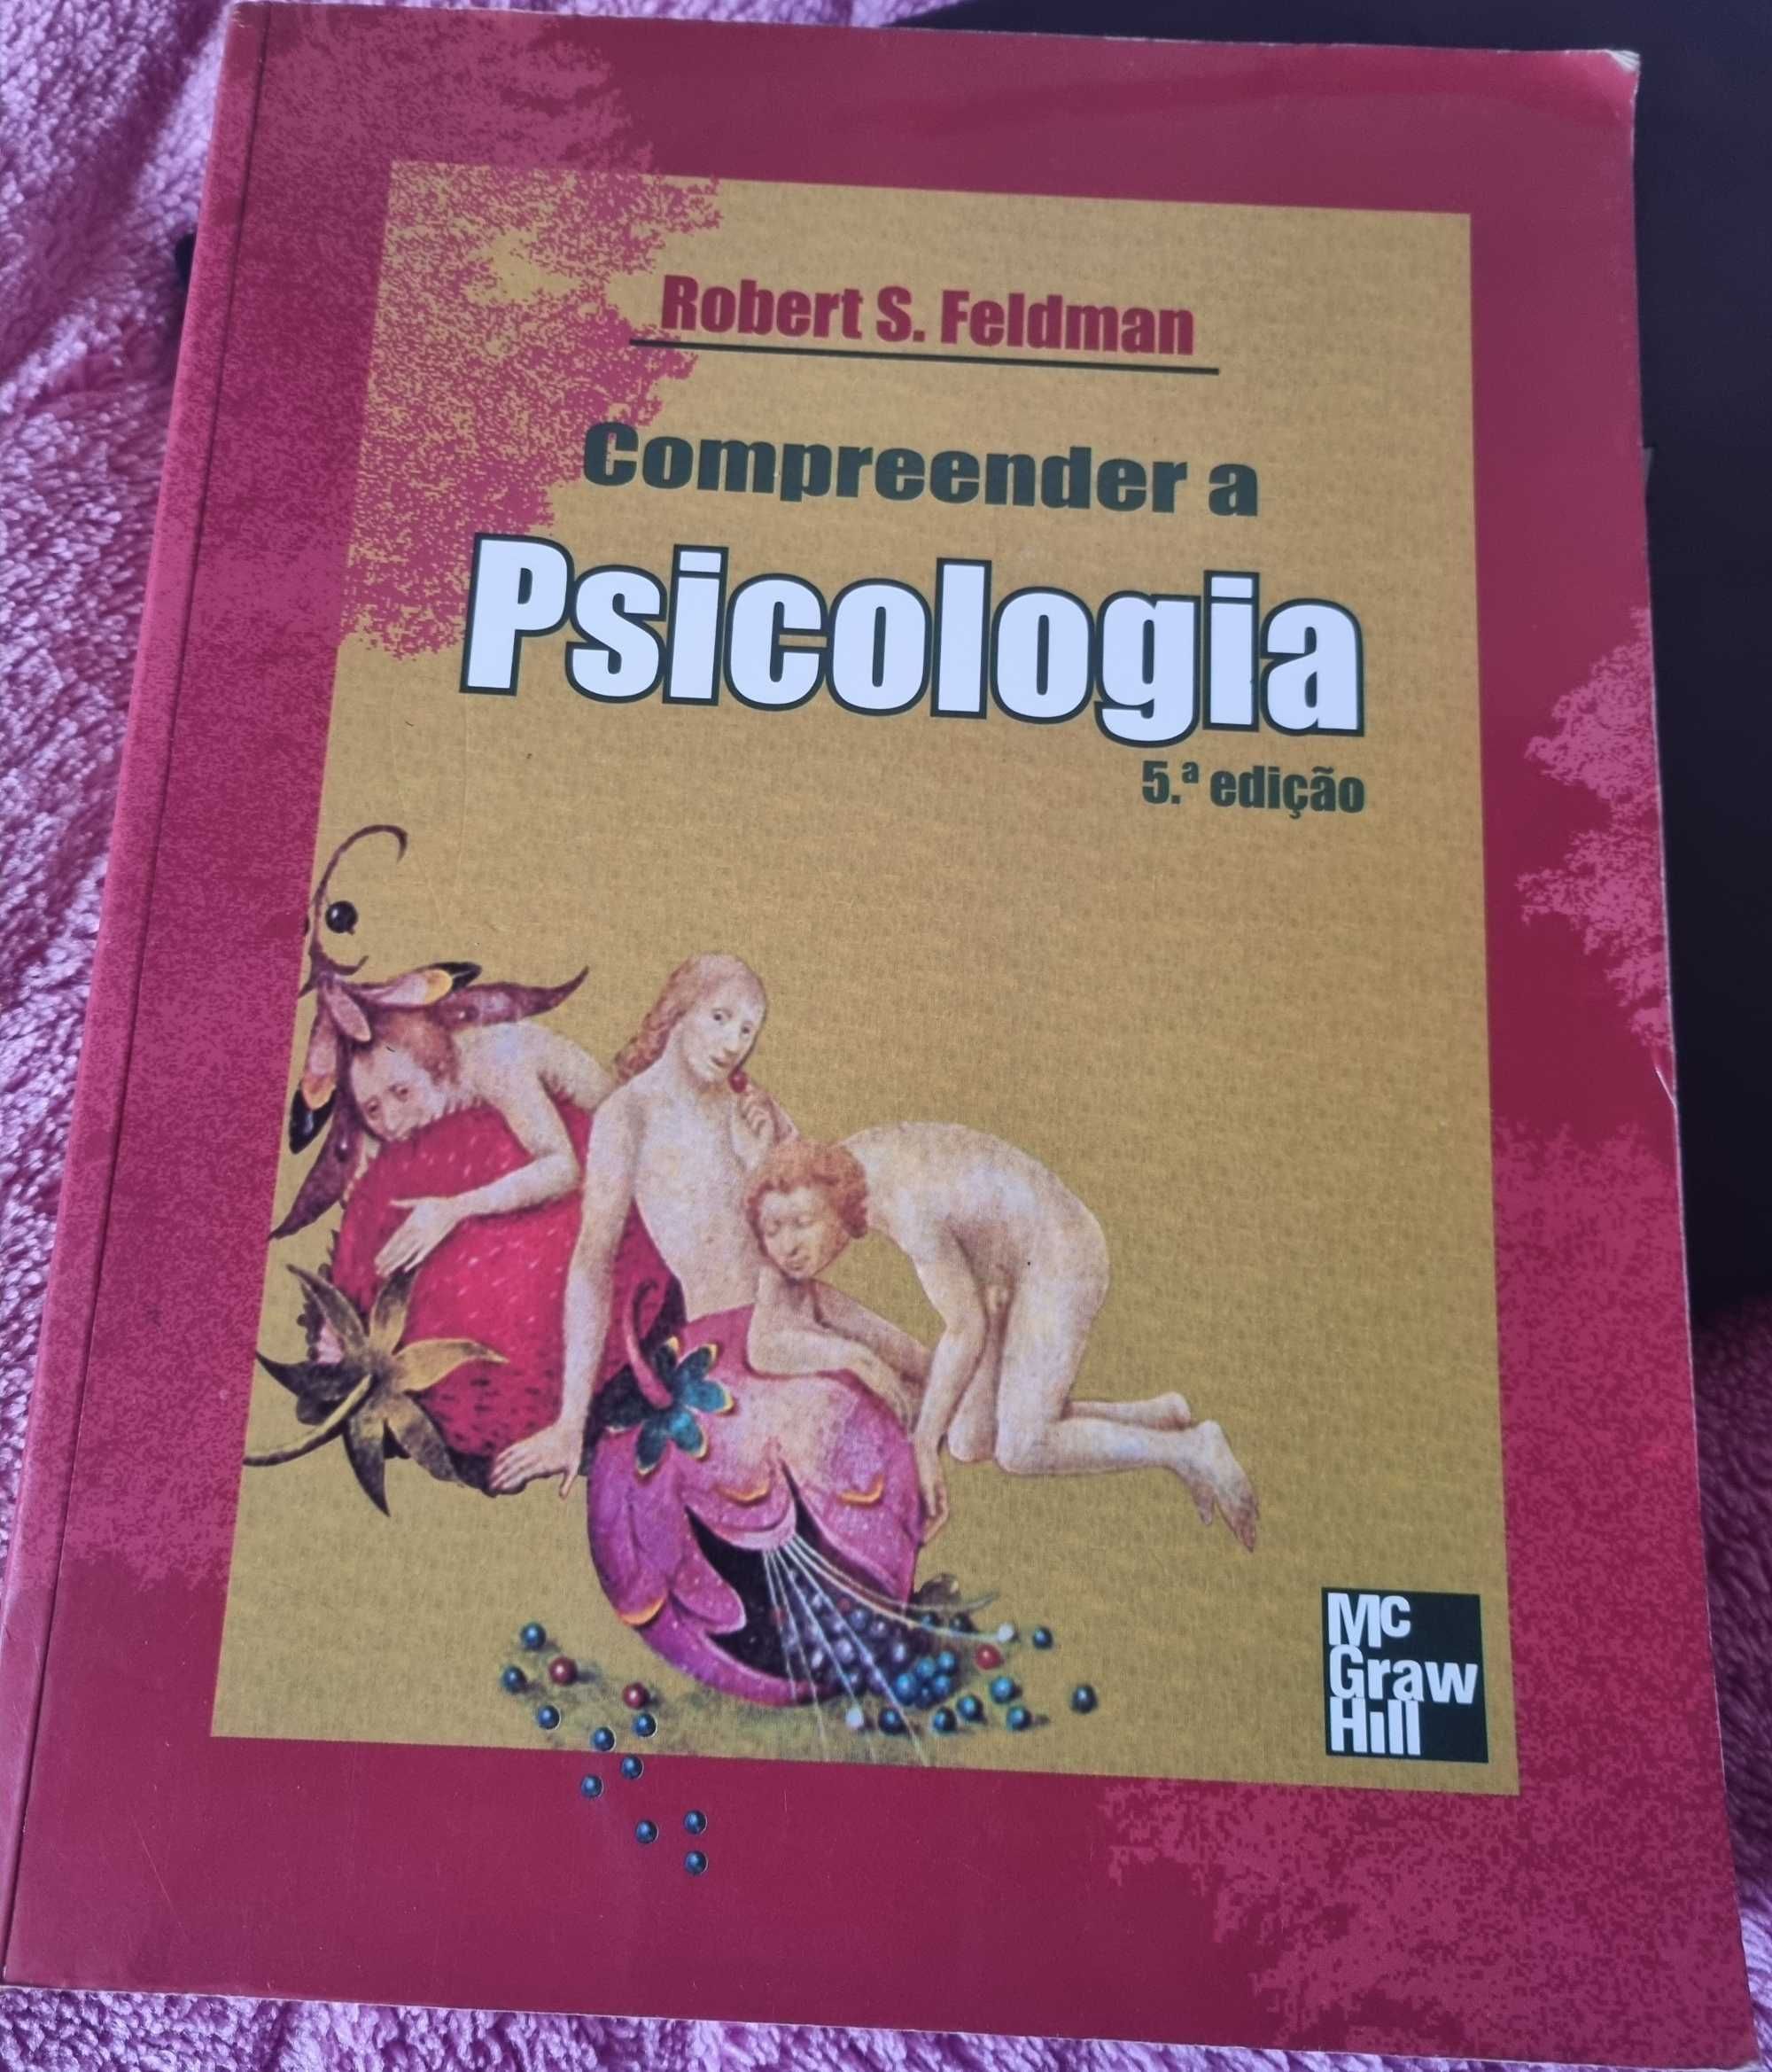 Compreender a Psicologia
de Robert S. Feldman - Excelentíssimo estado